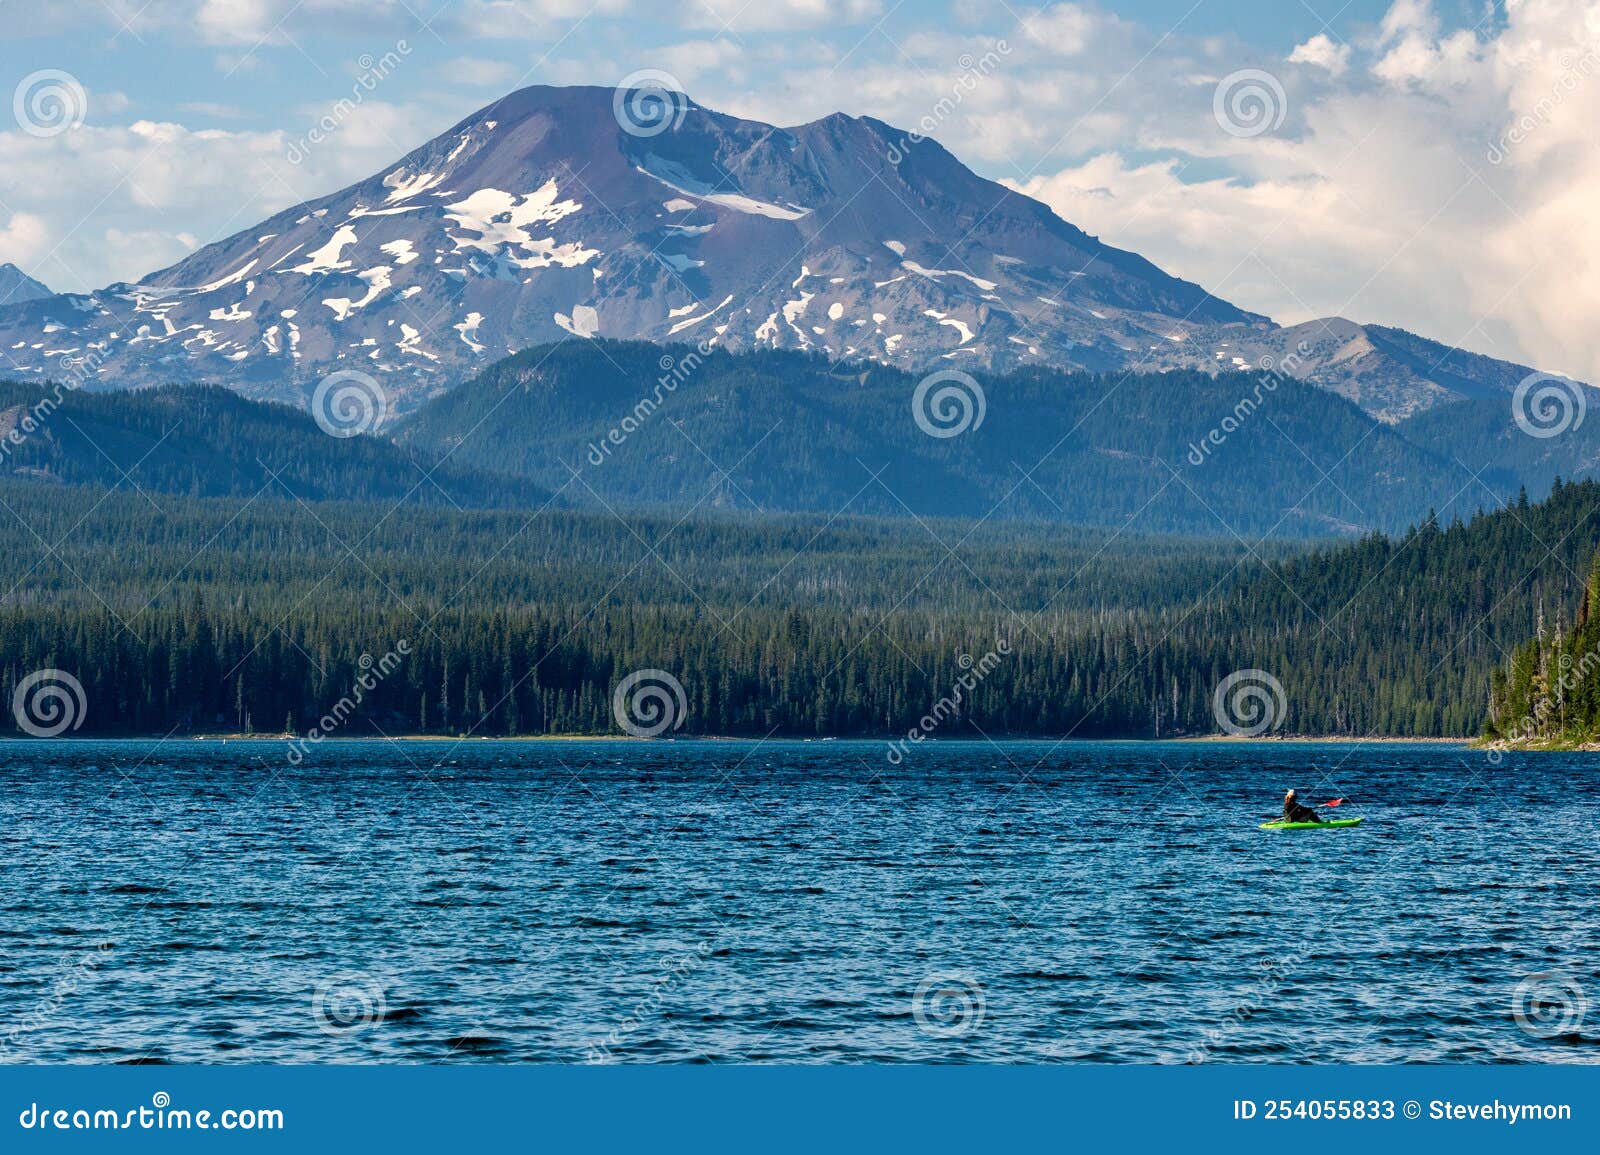 kayak on elk lake near bend, oregon